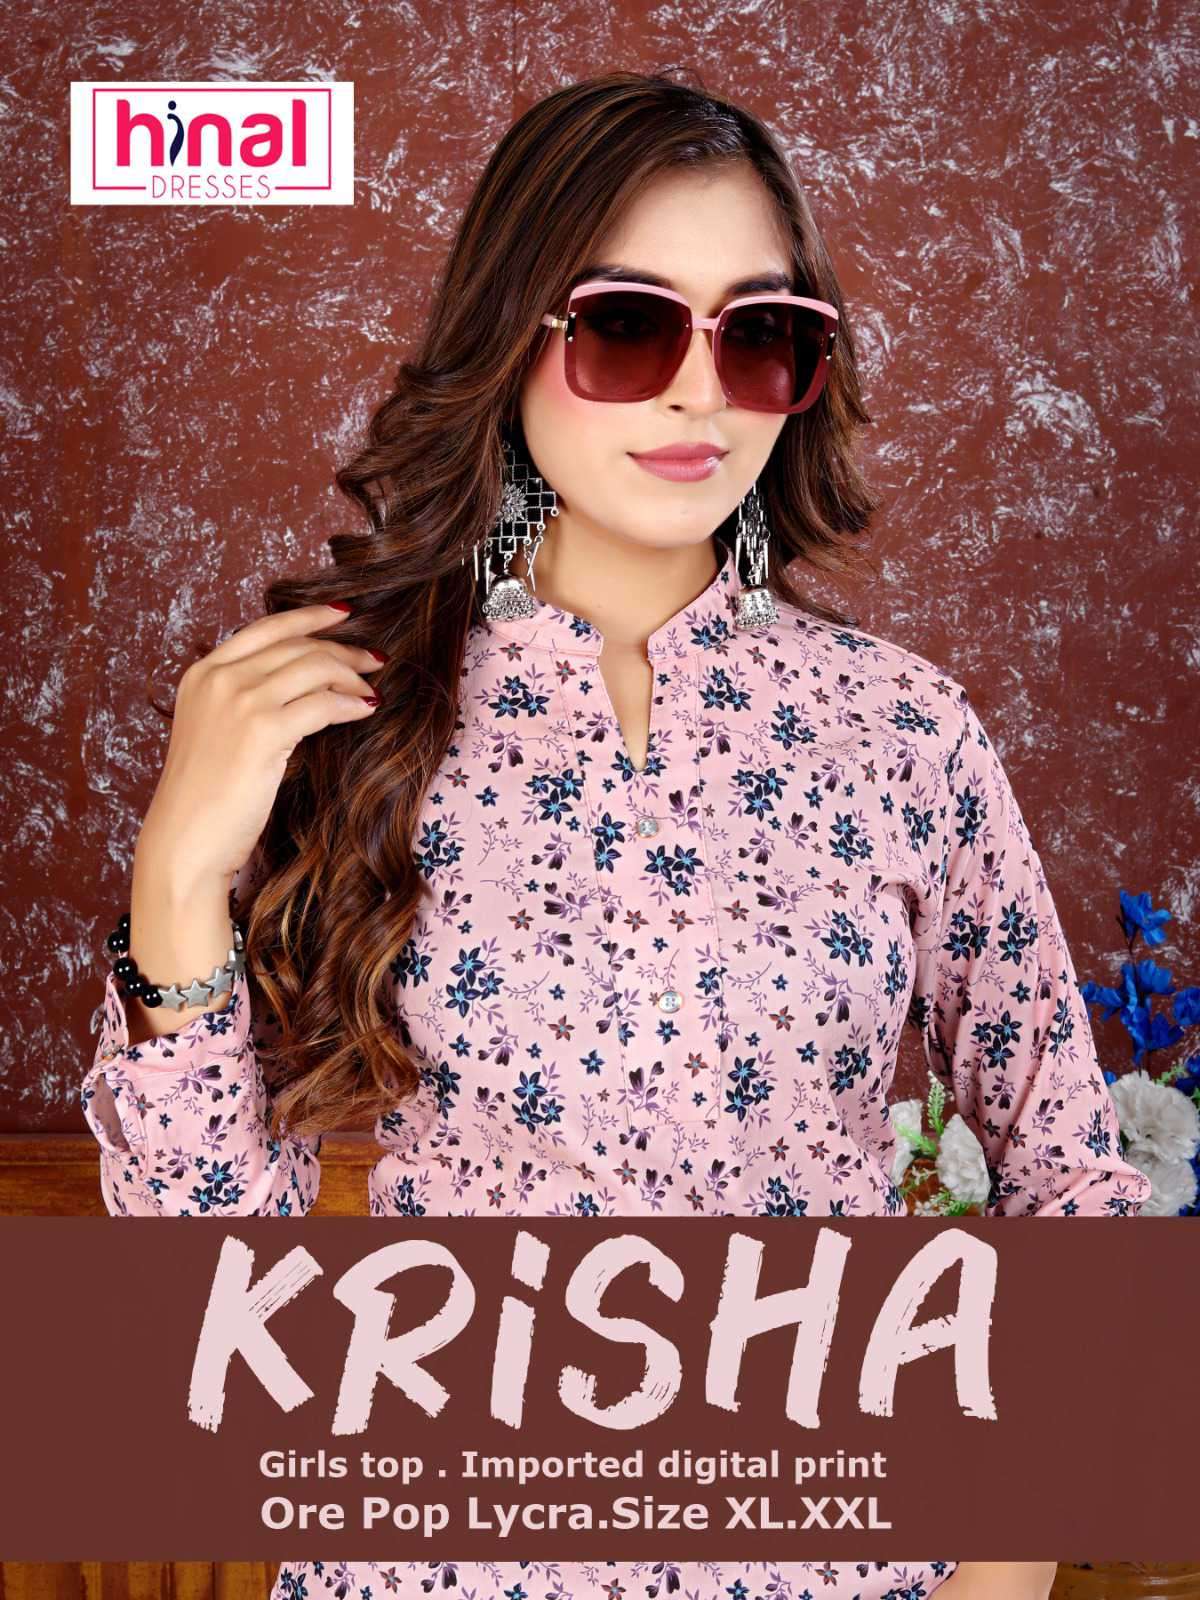 Hinal Krisha Fancy Digital Print Ethnic Wear Short Tops New Arrivals